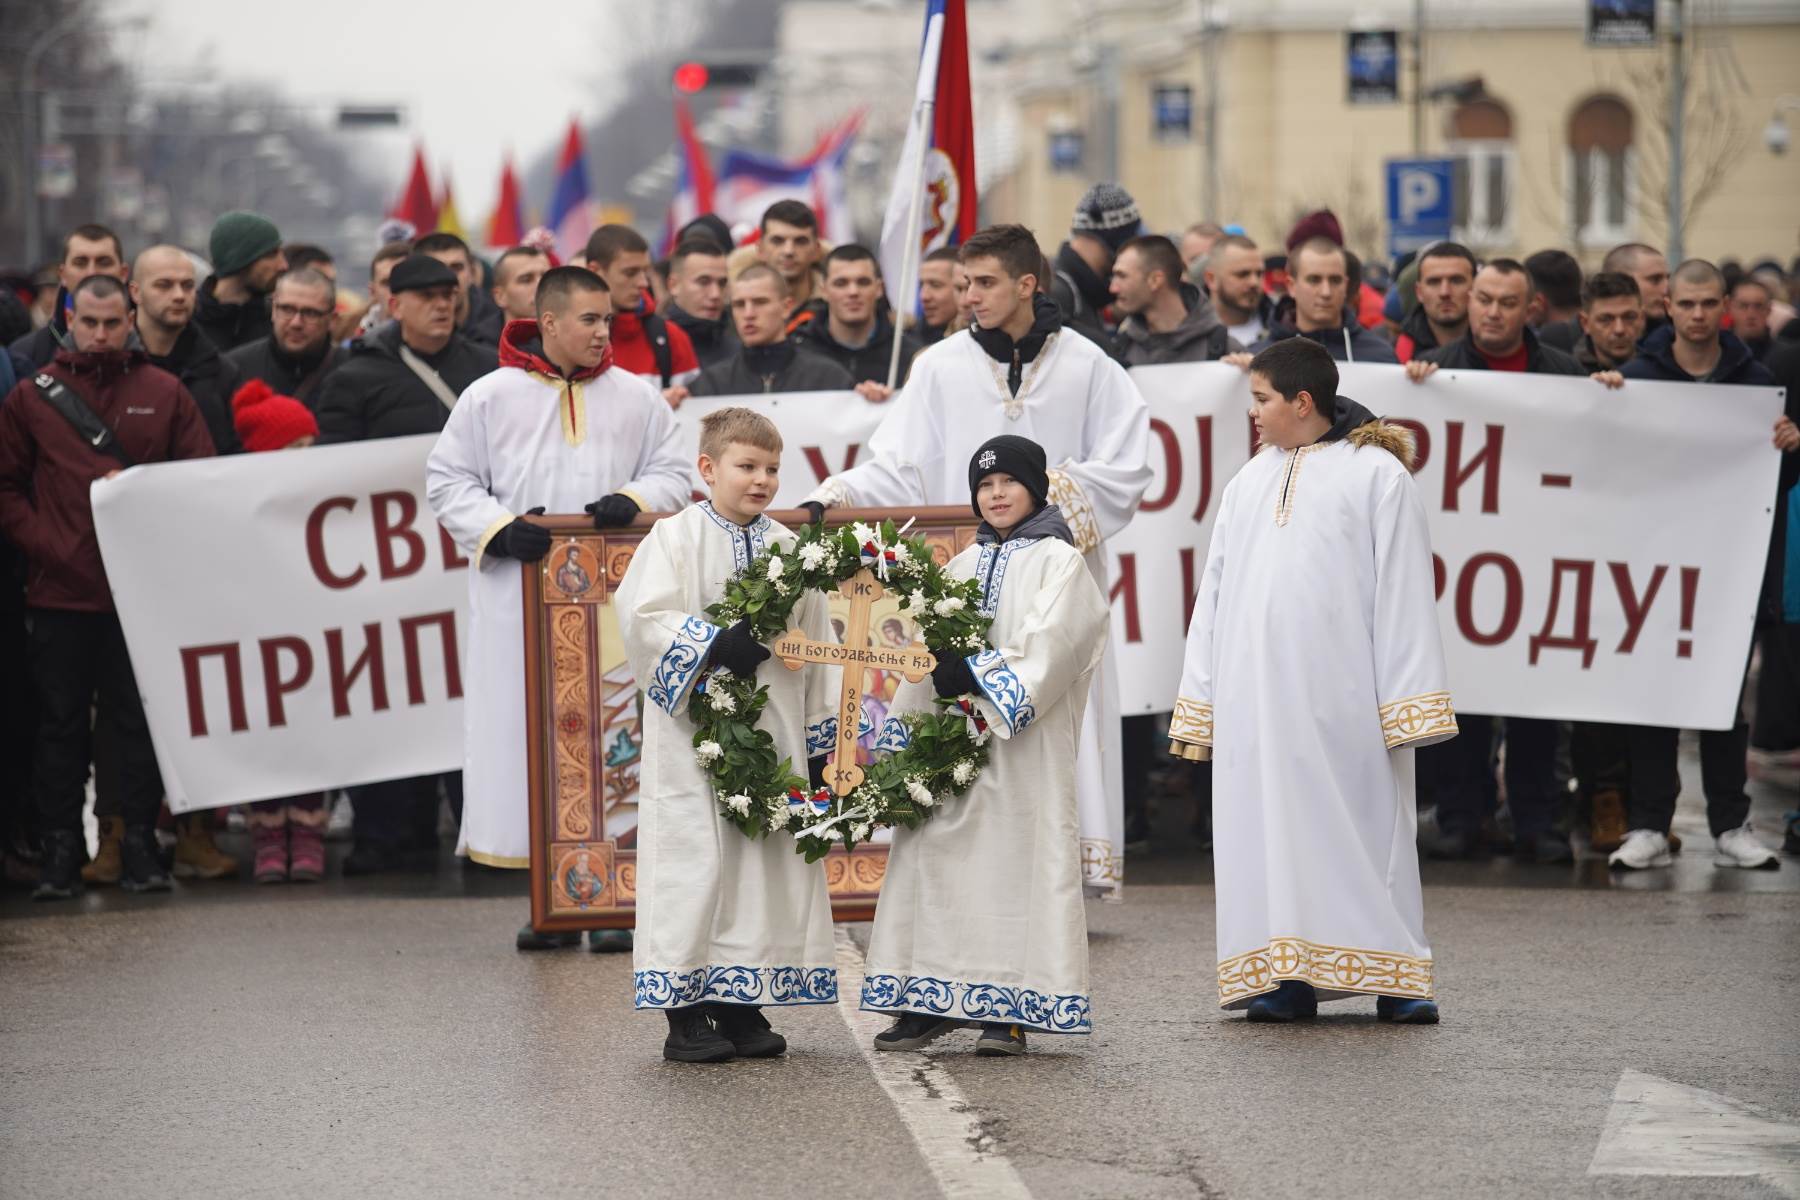  Bogojavljenje u Banjaluci: Ne damo svetinje u Crnoj Gori! (FOTO, VIDEO) 